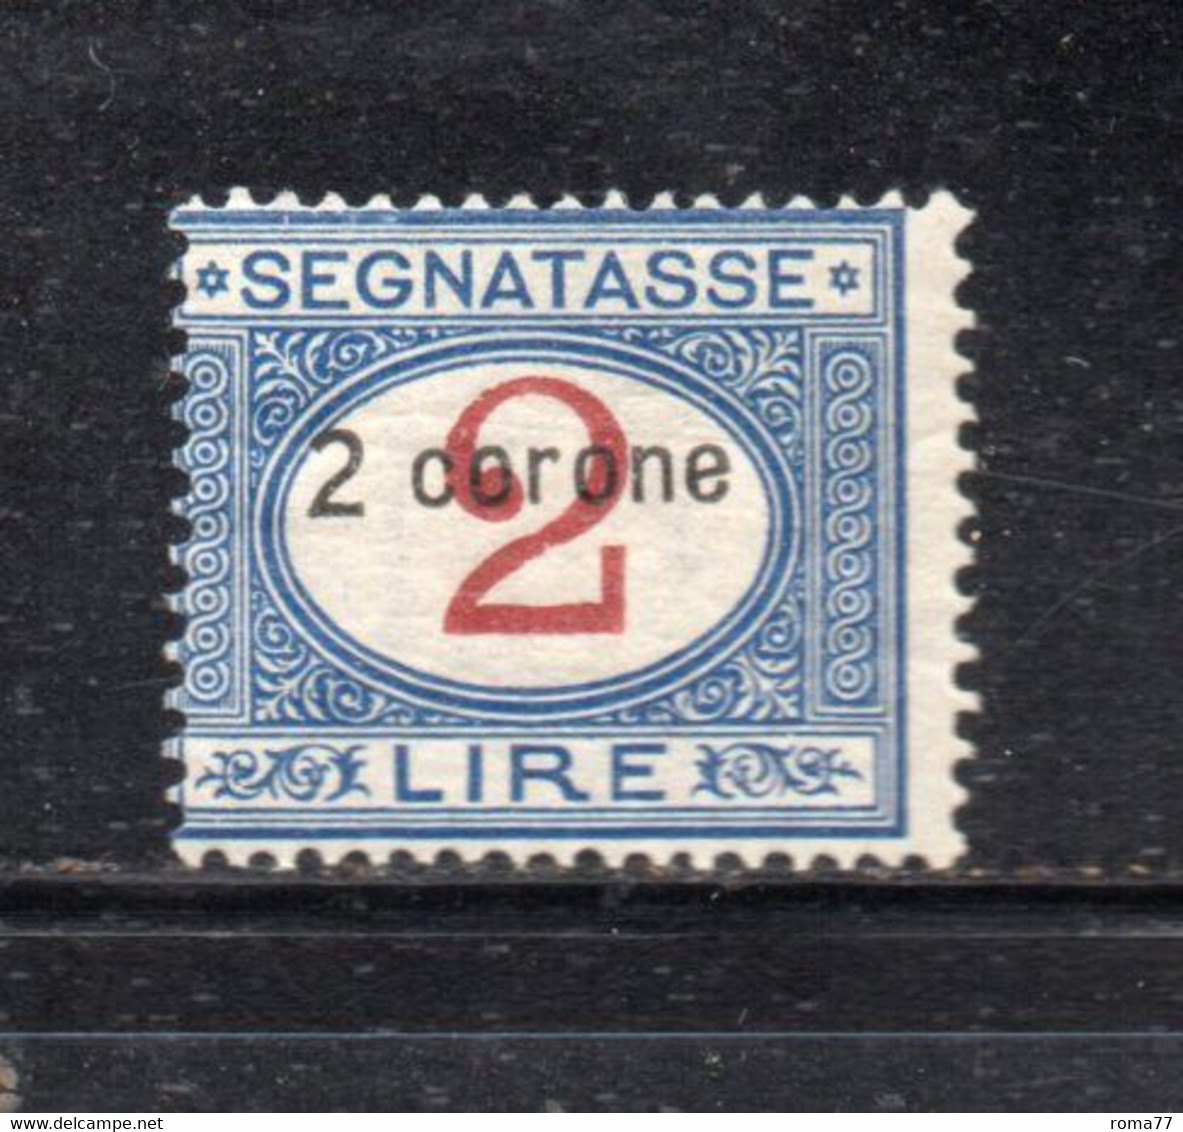 Y2365 - DALMAZIA 1922, Segnatasse Il N. 3  Con Gomma Integra  ***  MNH - Dalmatien